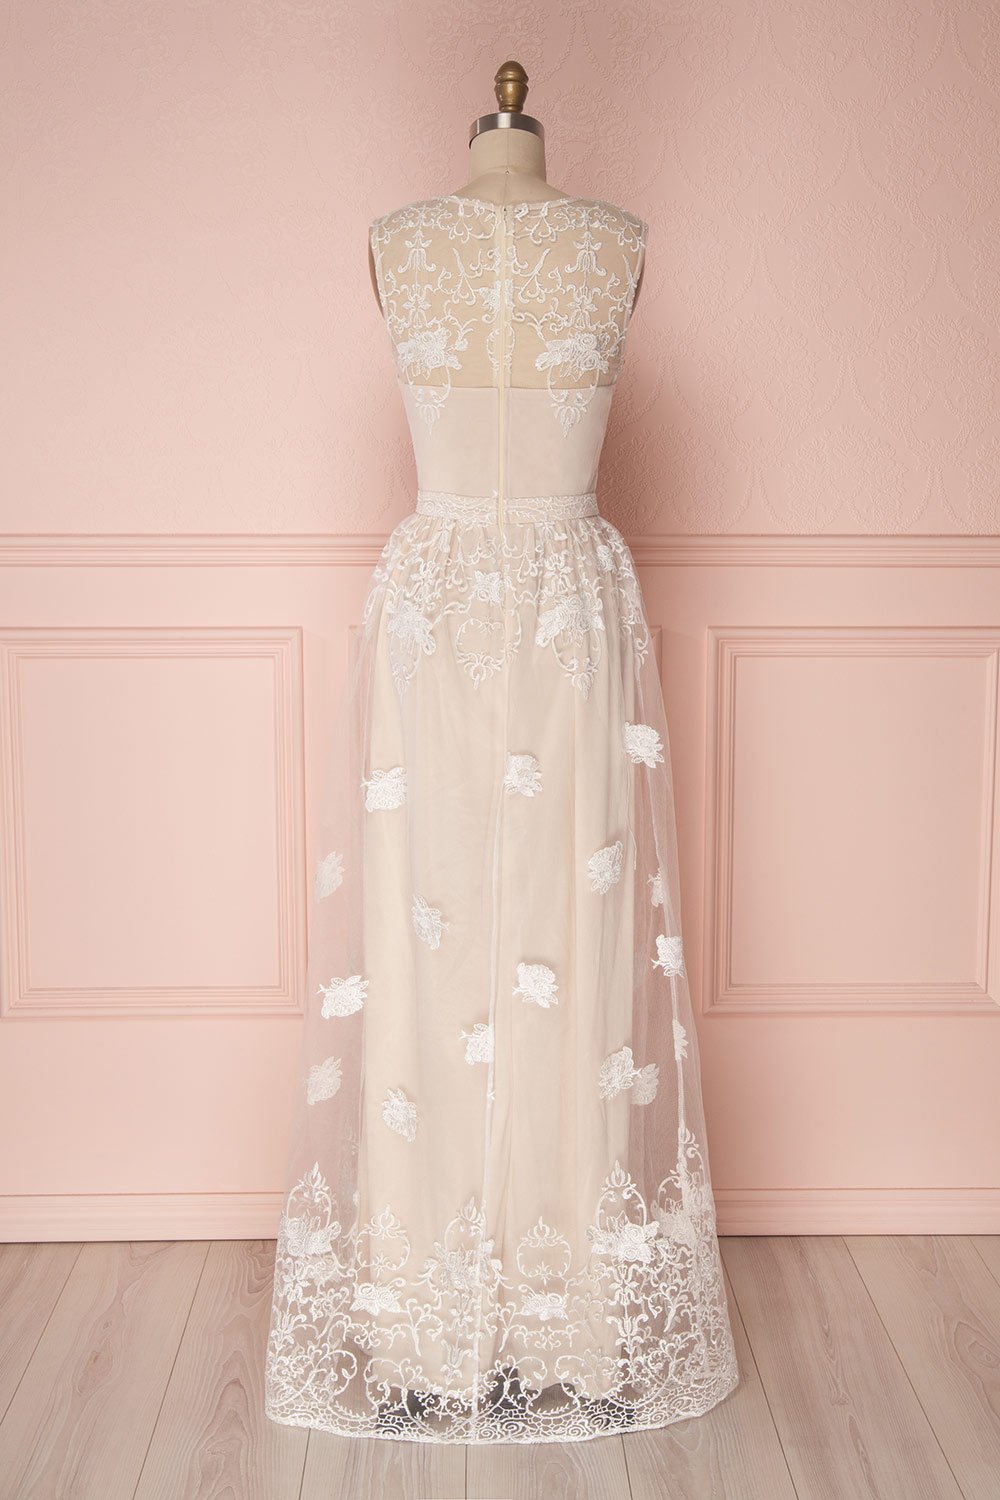 Ermanda | Beige and White Bridal Dress